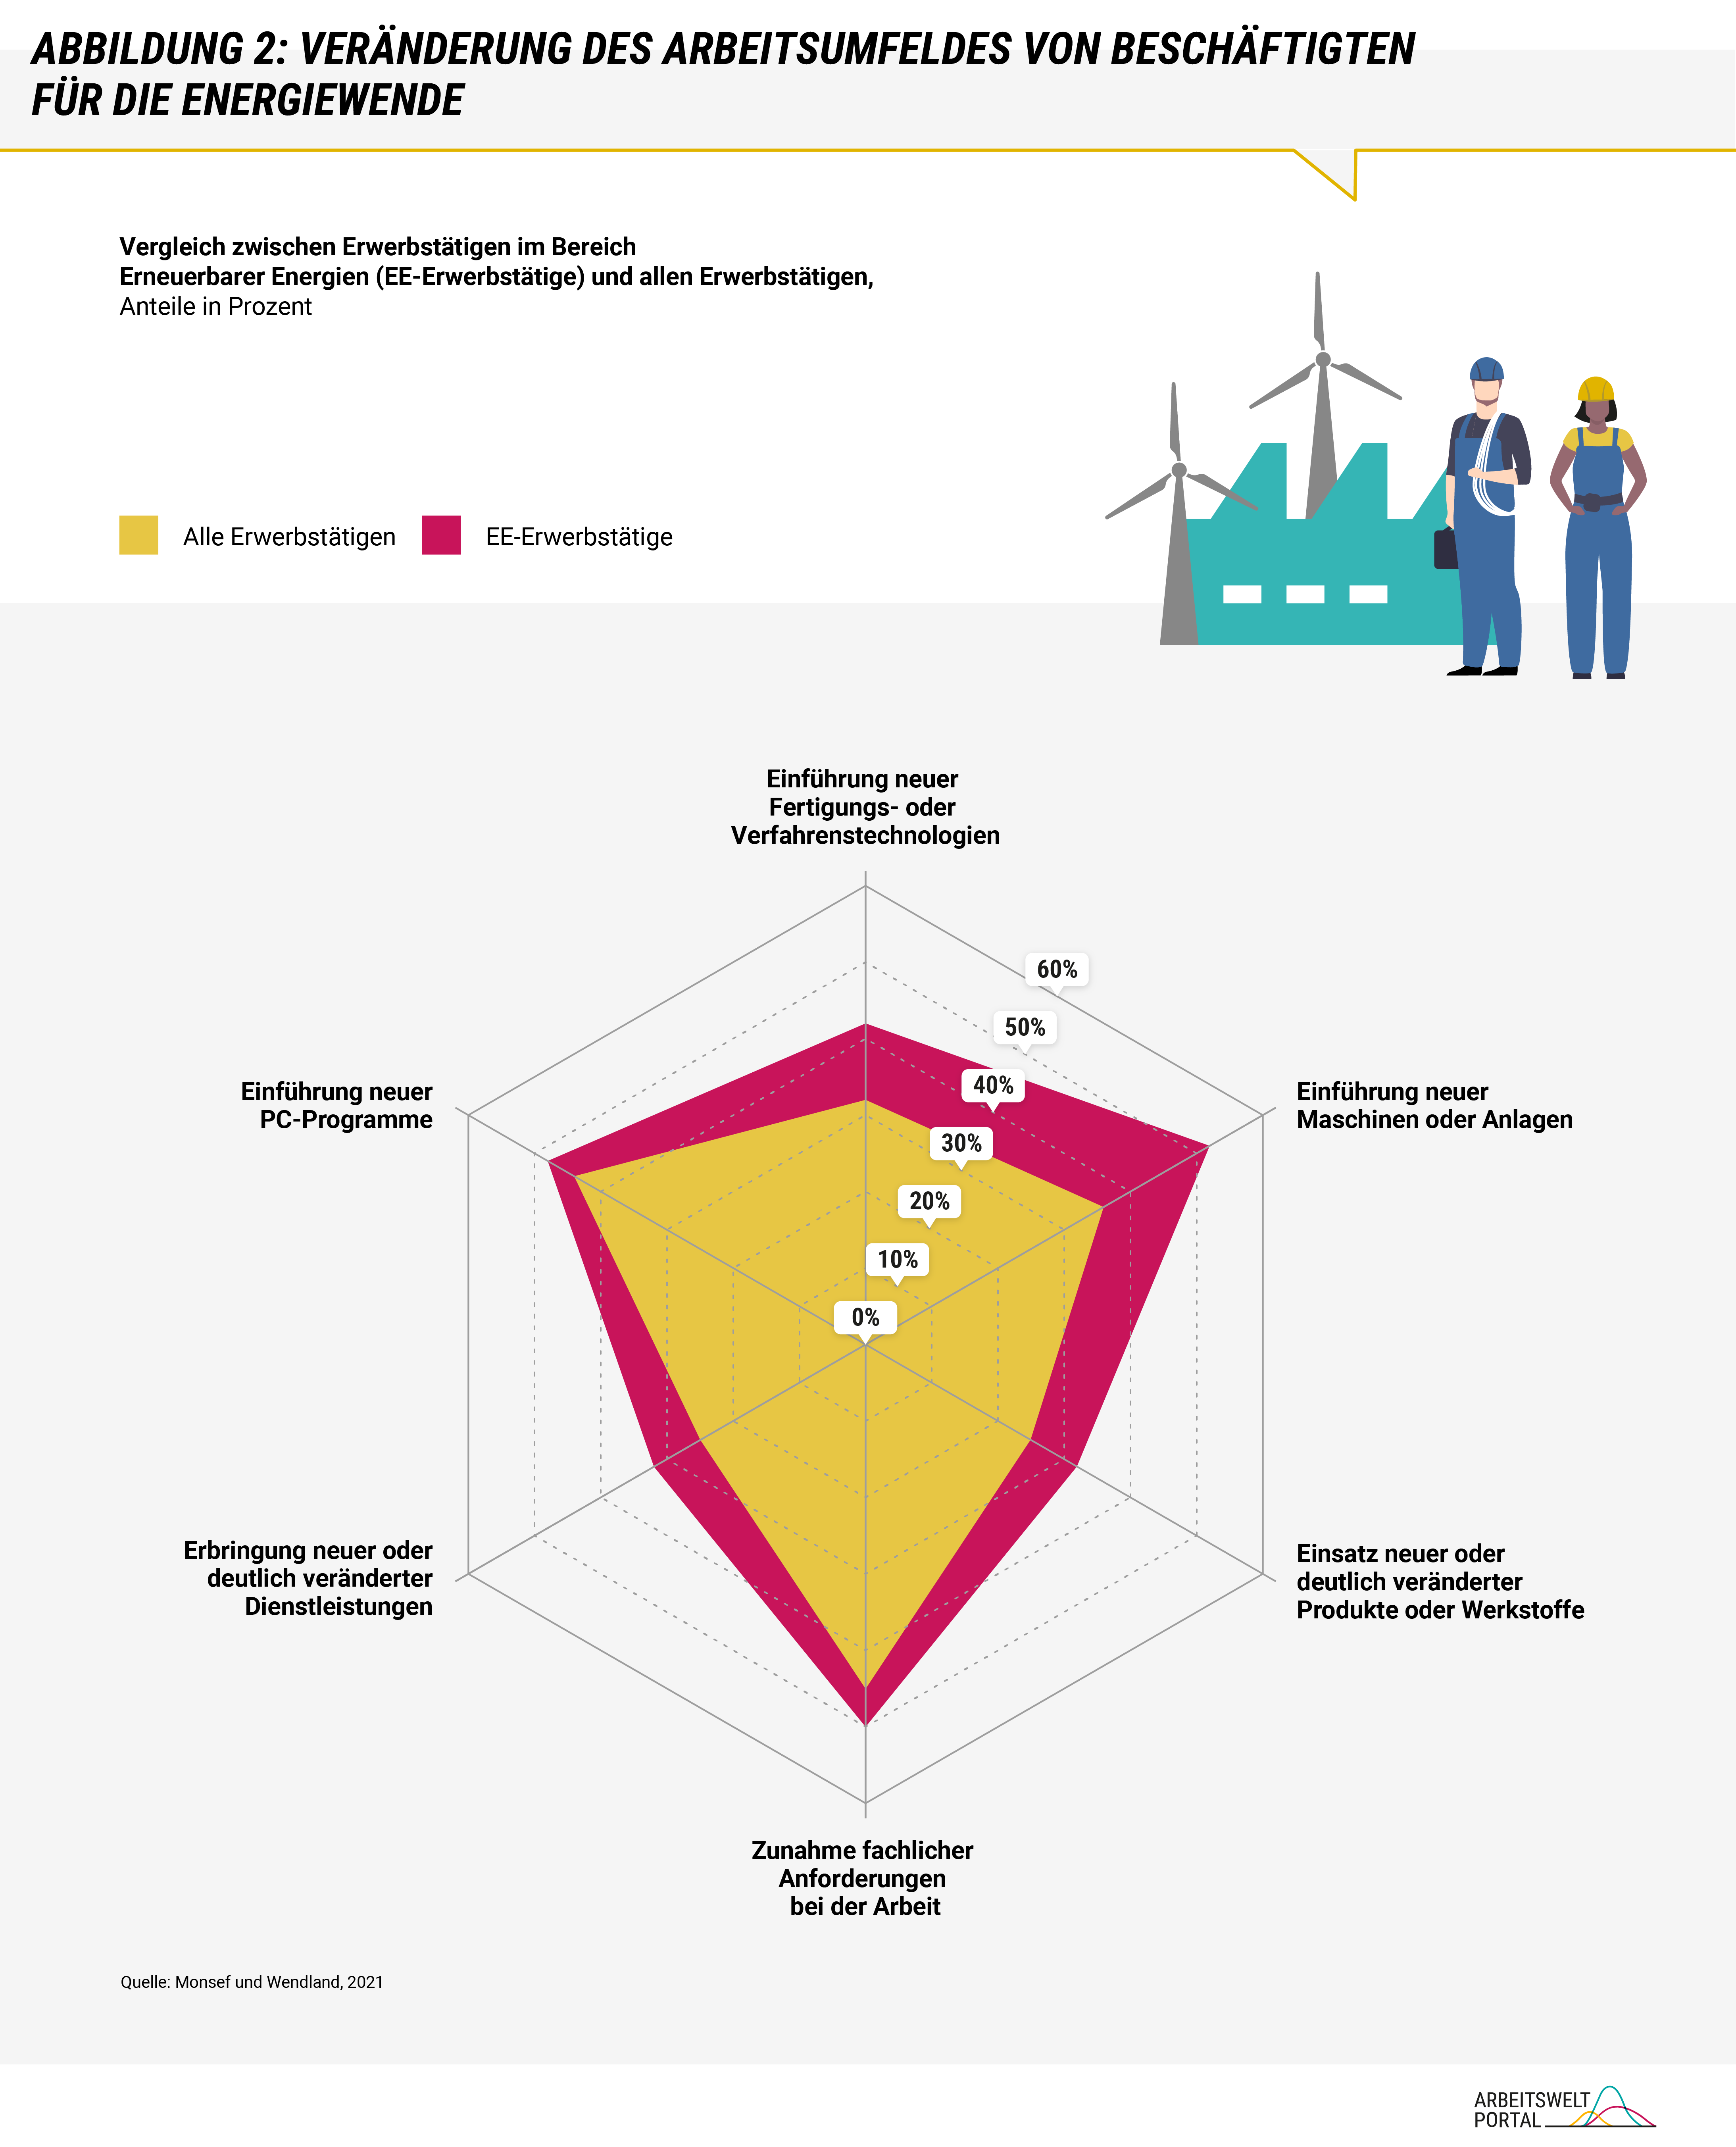 Die Infografik zeigt die Veränderung des Arbeitsumfelds für Beschäftigte im Bereich der Energiewende. Dieses ist im Vergleich zu anderen Beschäftigten von einem übermäßigen Maß an neuen Maschinen, Technologien und fachlichen Anforderungen geprägt. 